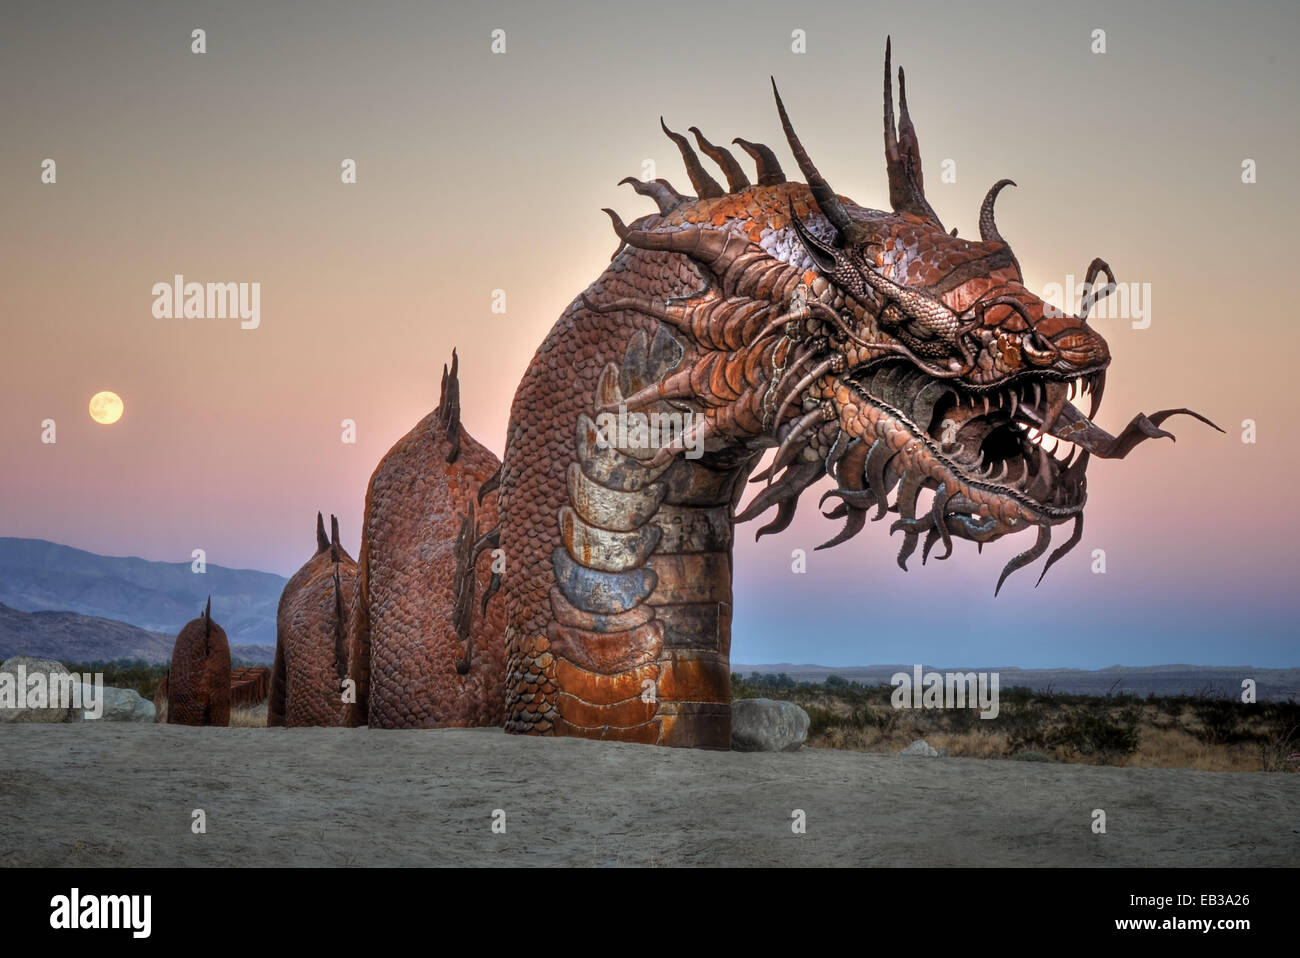 Sculpture de dragon dans le désert avec pleine lune montante en arrière-plan, Borrego Springs, Californie, États-Unis Banque D'Images